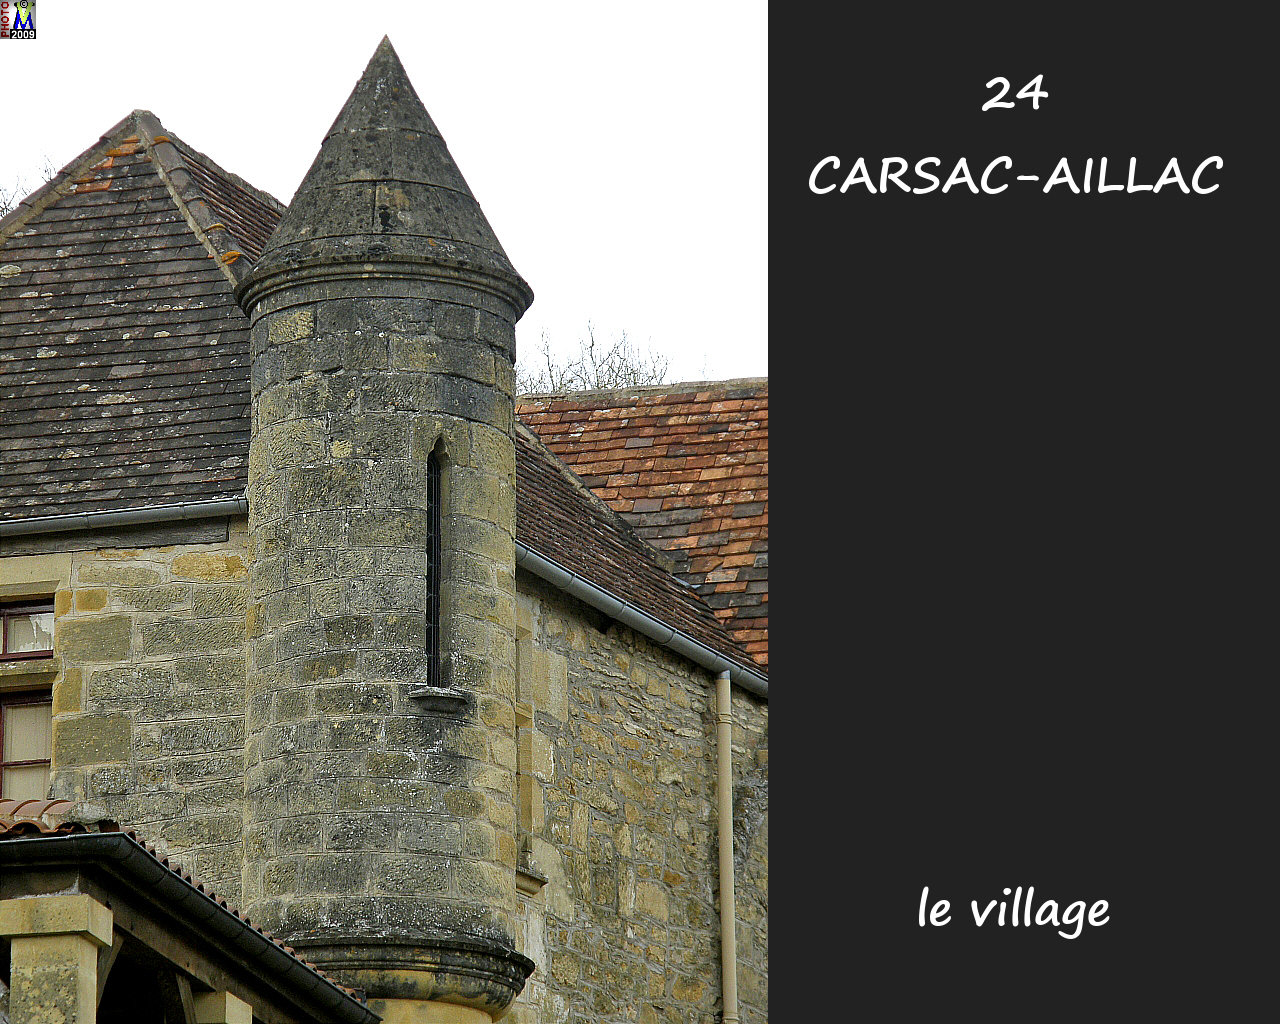 24CARSAC-AILLAC_village_108.jpg